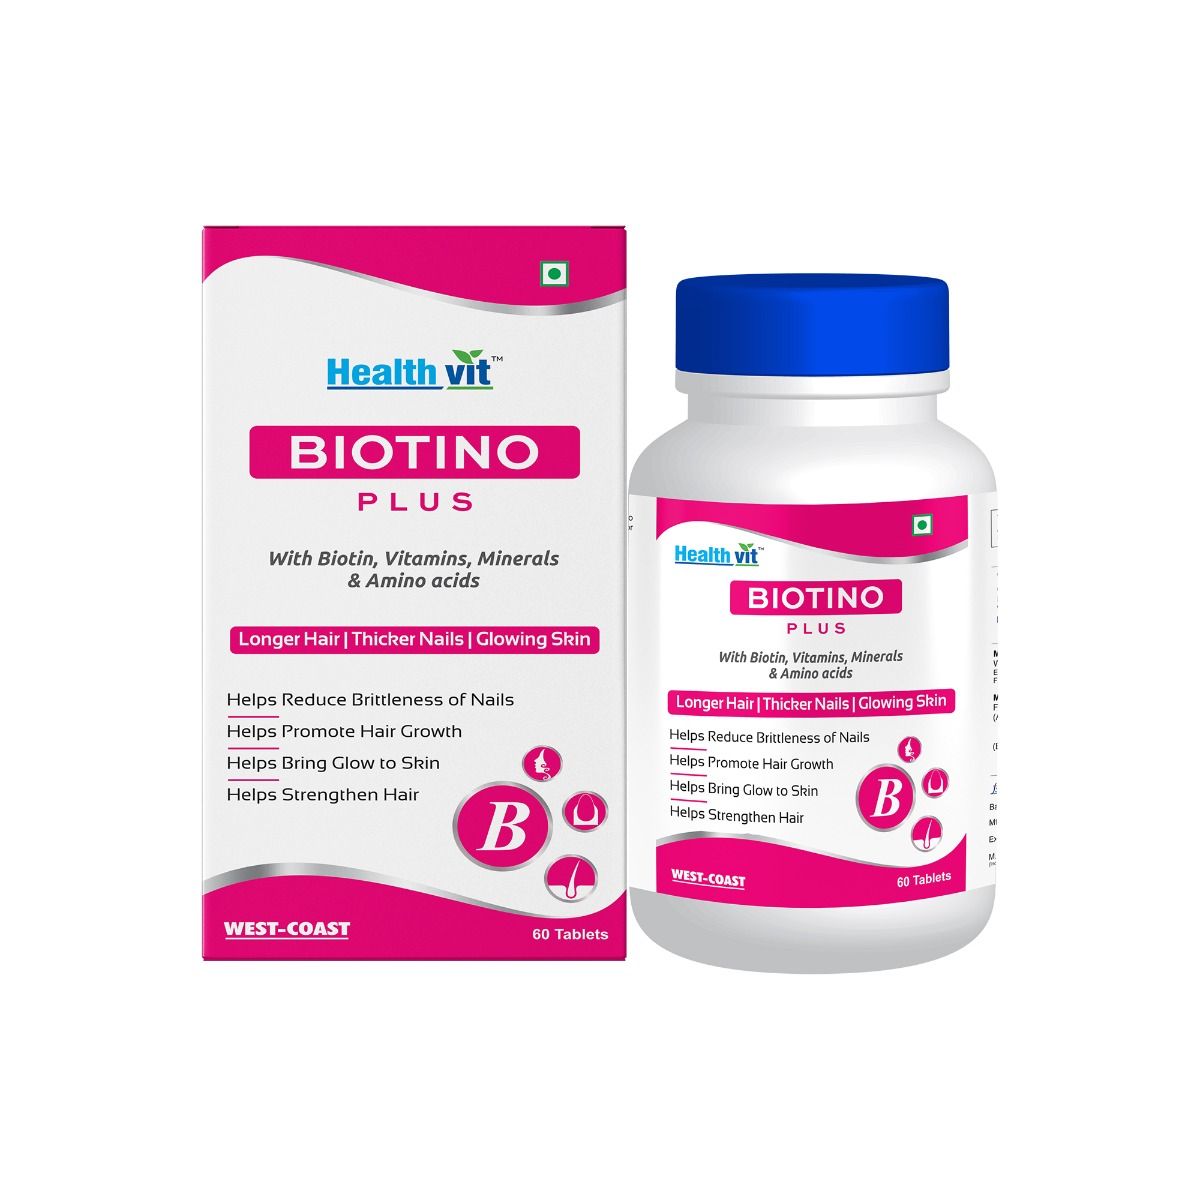 Healthvit Biotino Plus, 60 Tablets, Pack of 1 